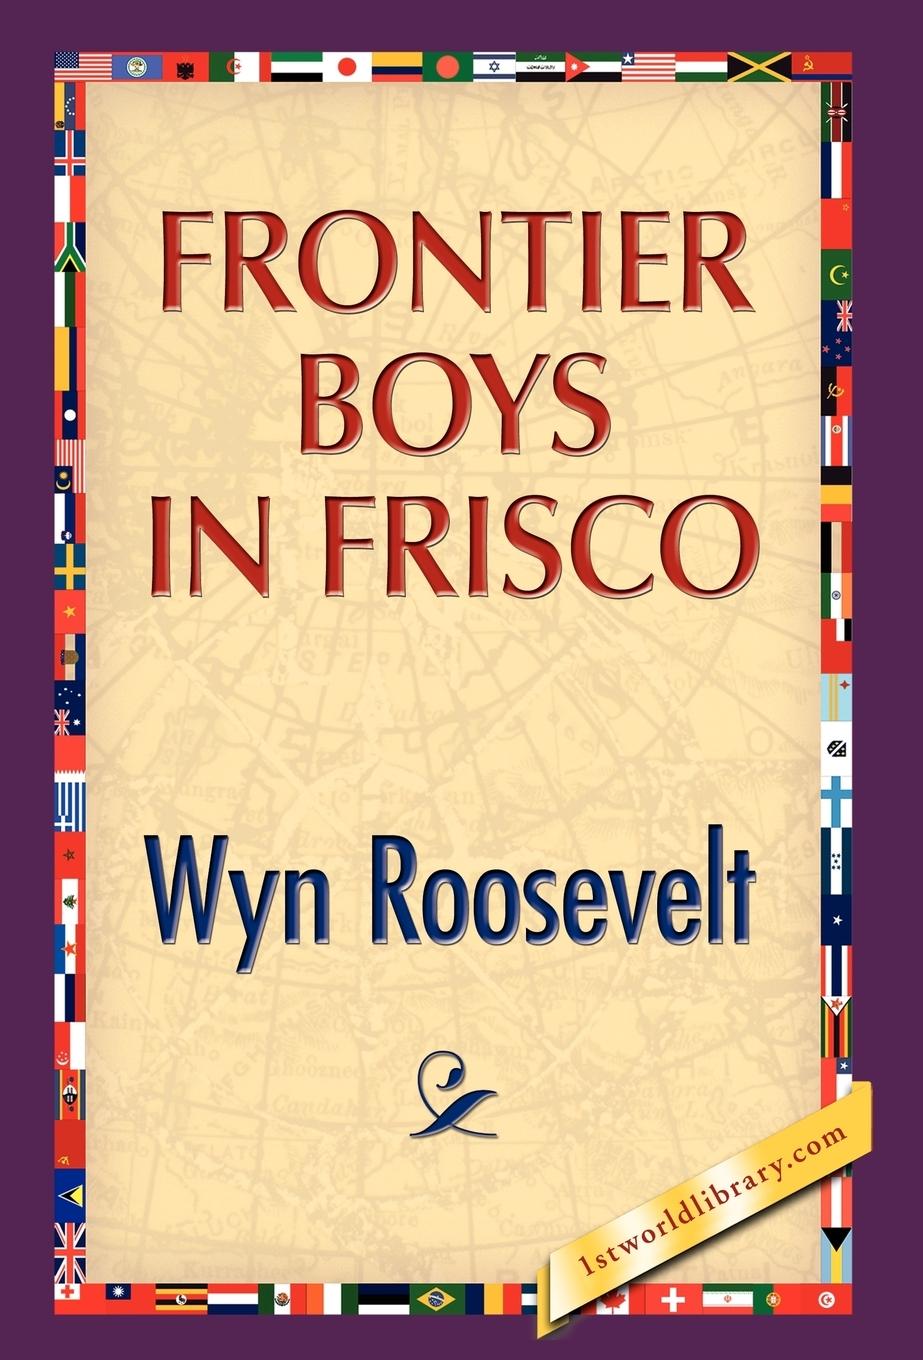 Frontier Boys in Frisco - Roosevelt, Wyn